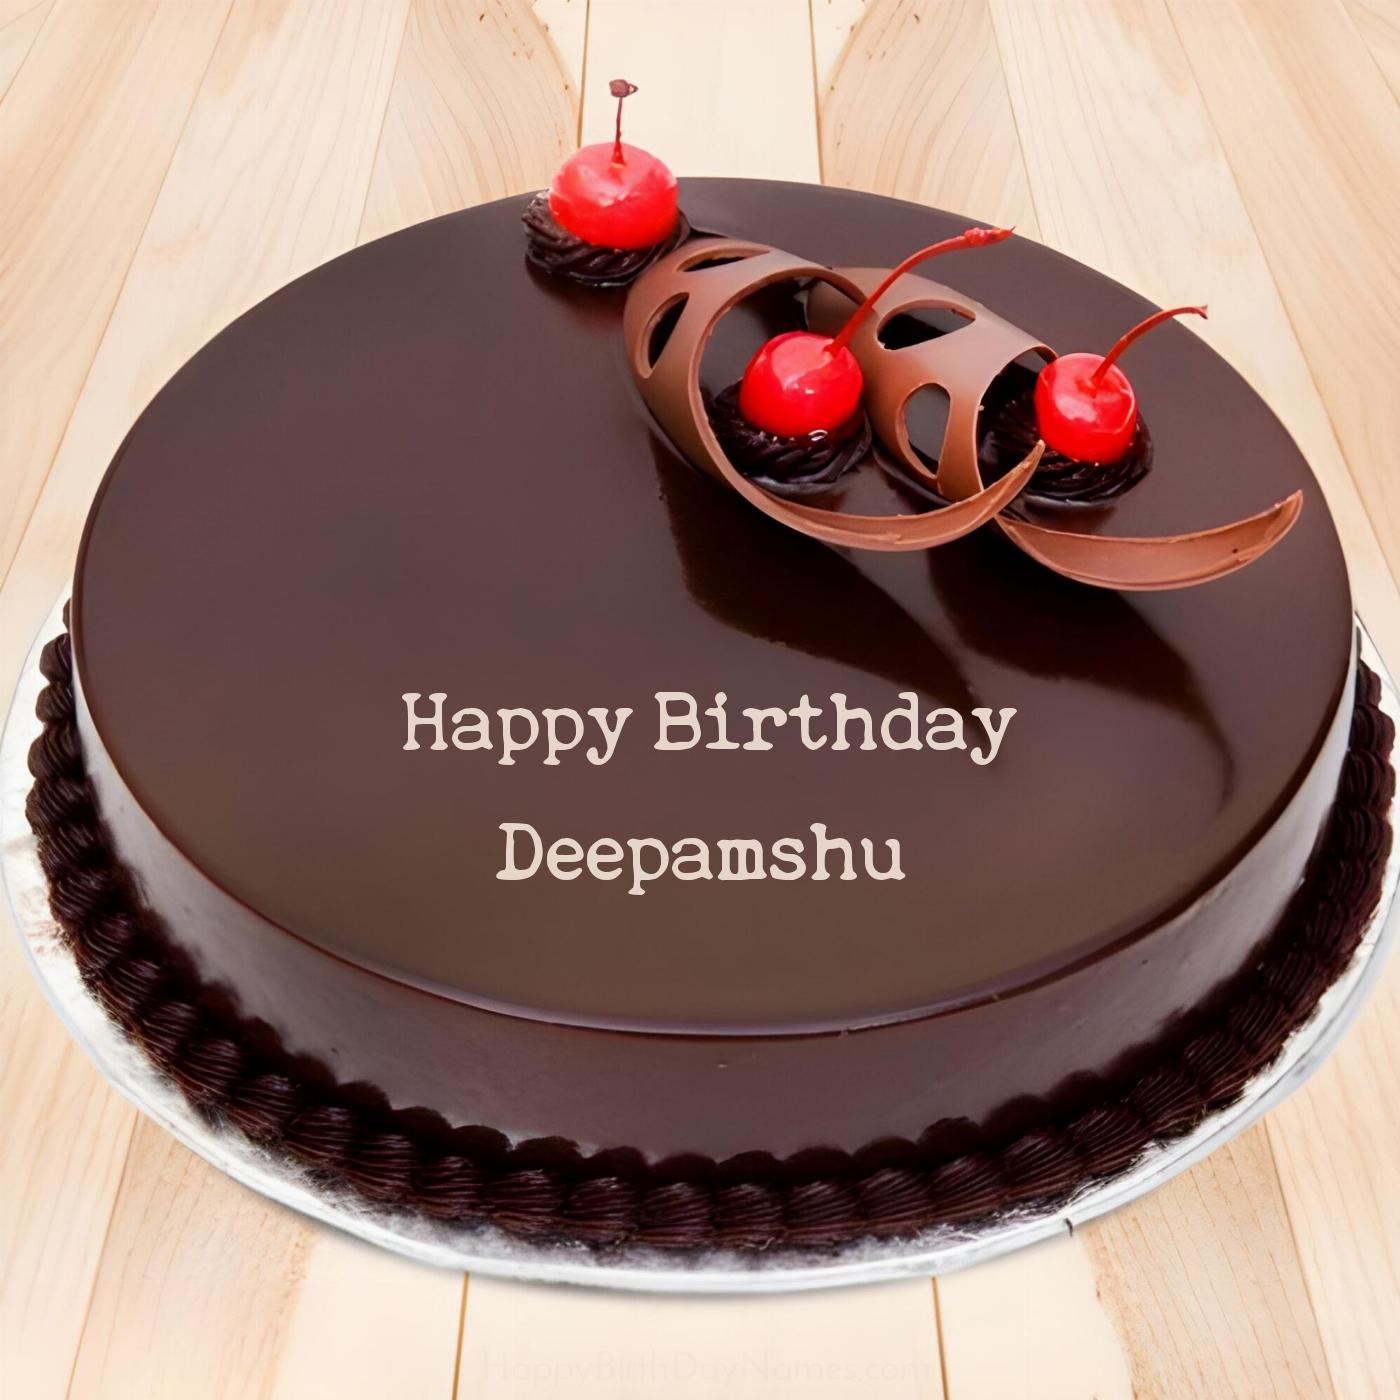 Happy Birthday Deepamshu Chocolate Cherry Cake